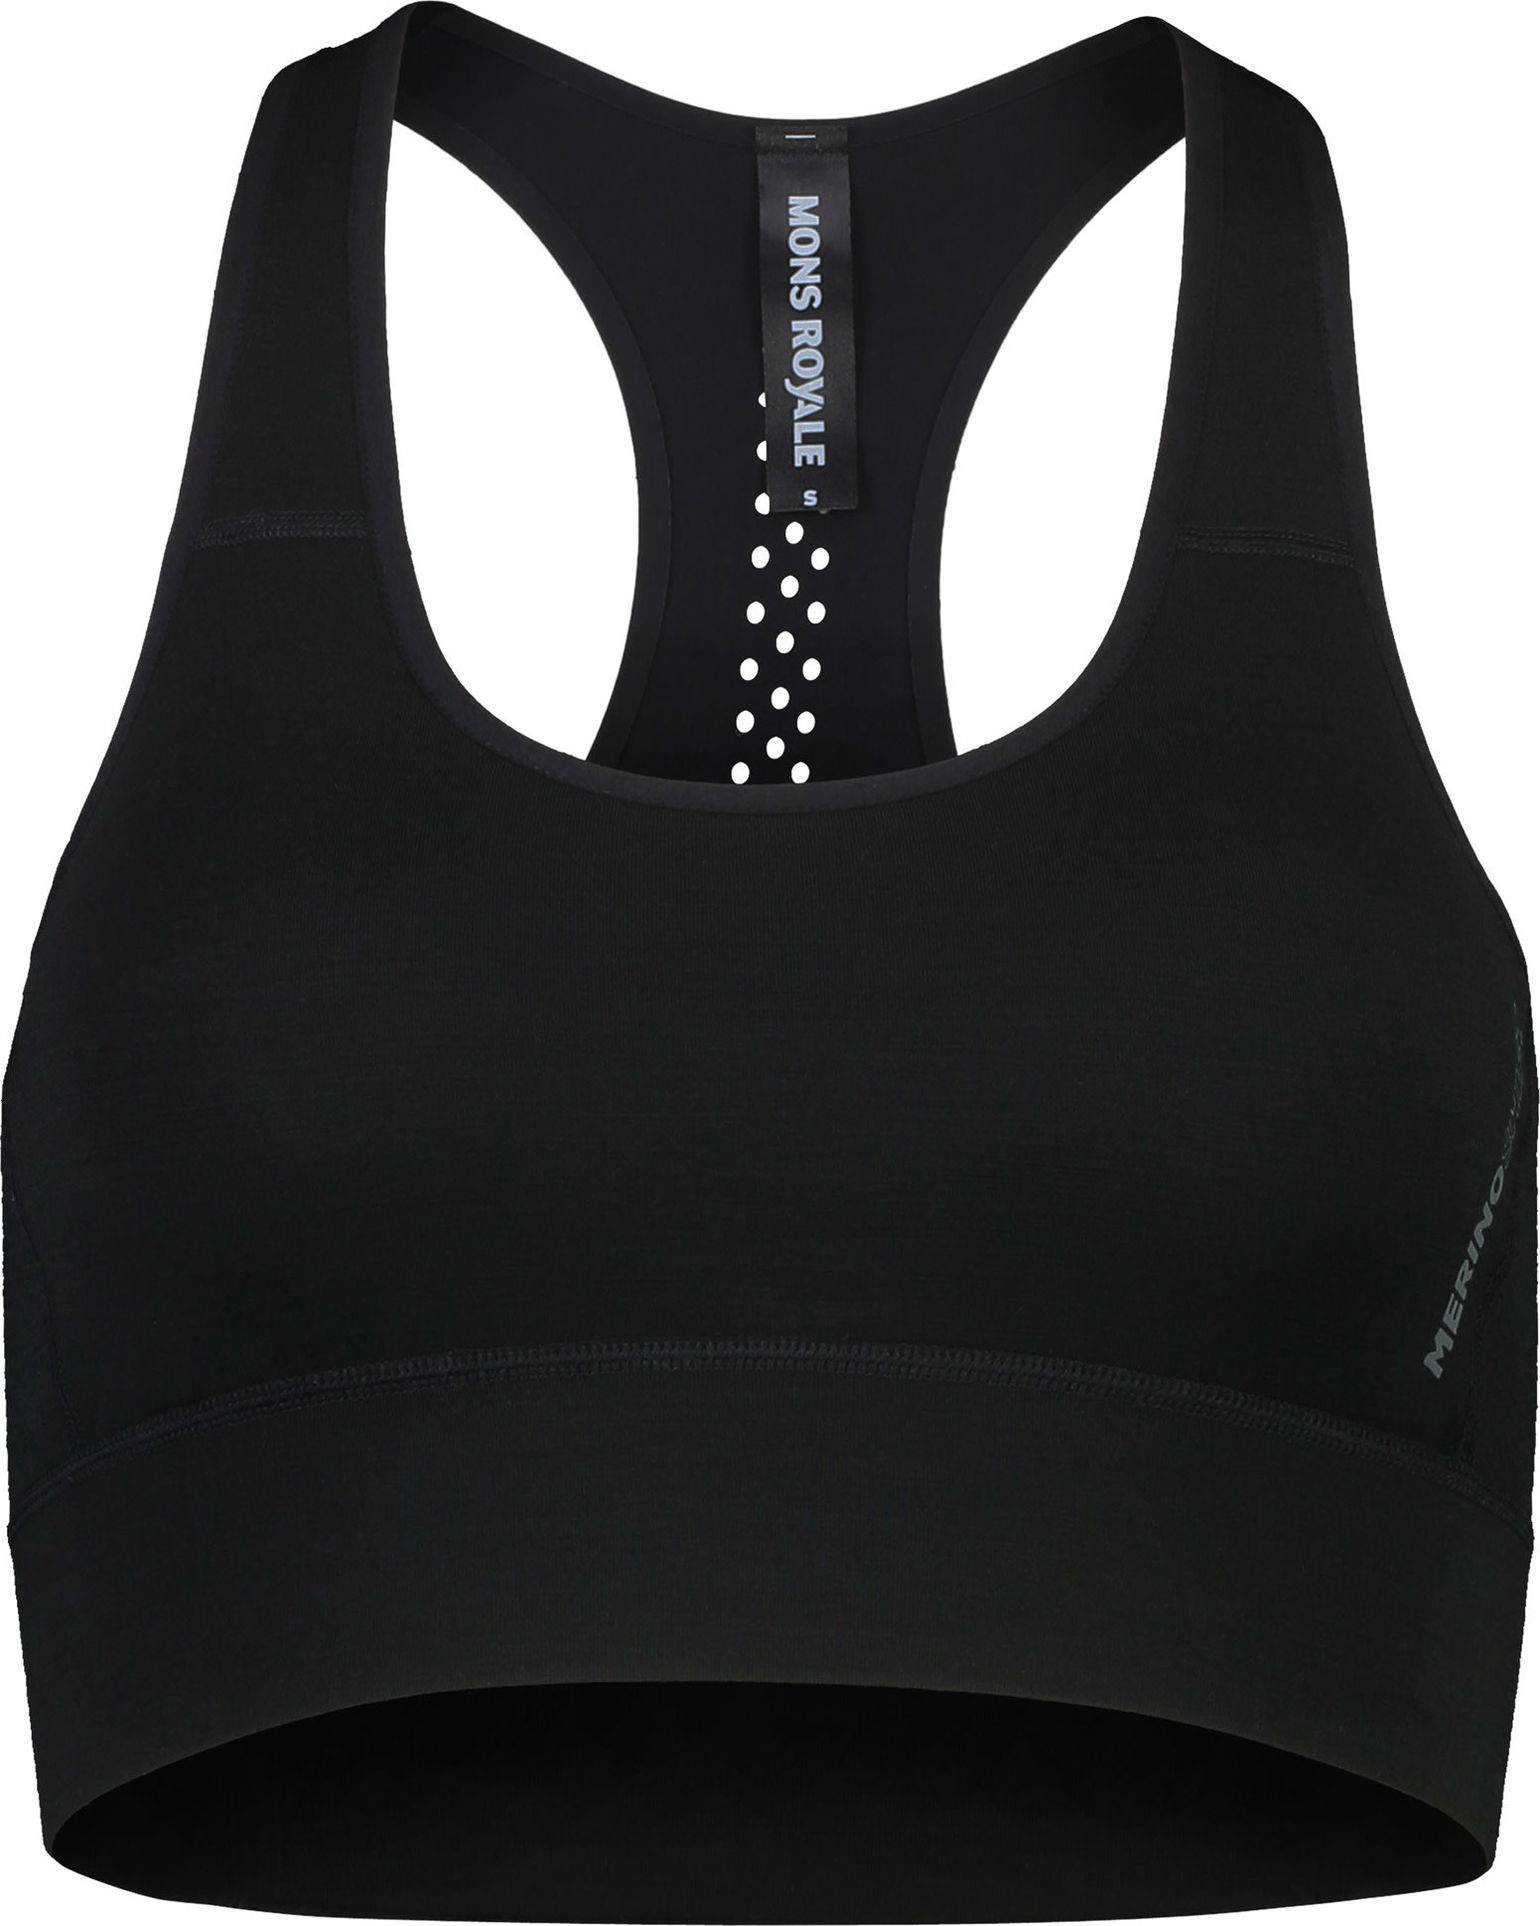 Women's Stratos Merino Shirt Sports Bra Black